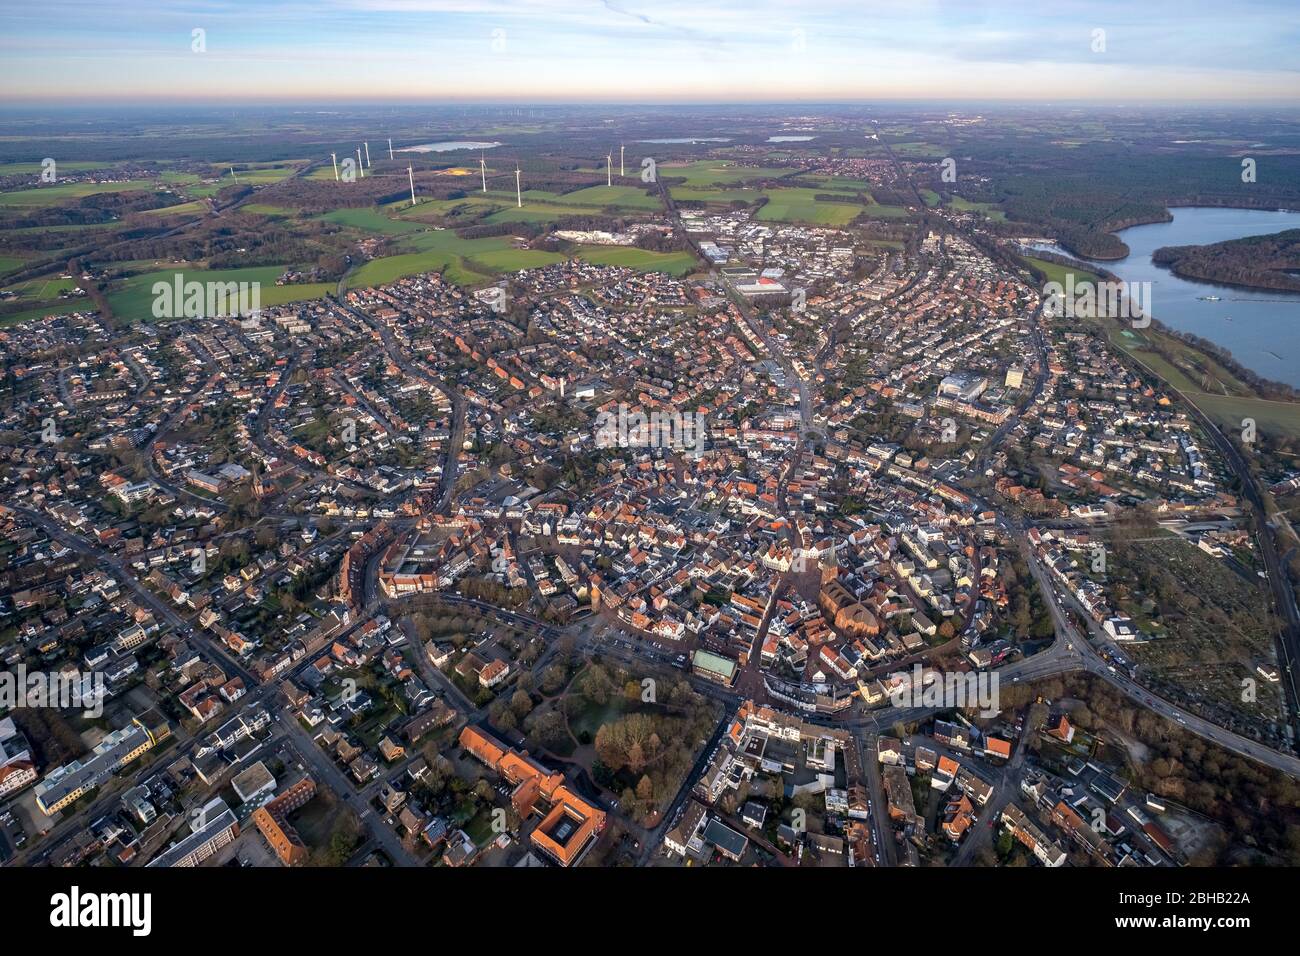 Vue aérienne, réservoir de Haltern, éoliennes, centre-ville ancien, Haltern am See, Rhénanie-du-Nord-Westphalie, Allemagne Banque D'Images